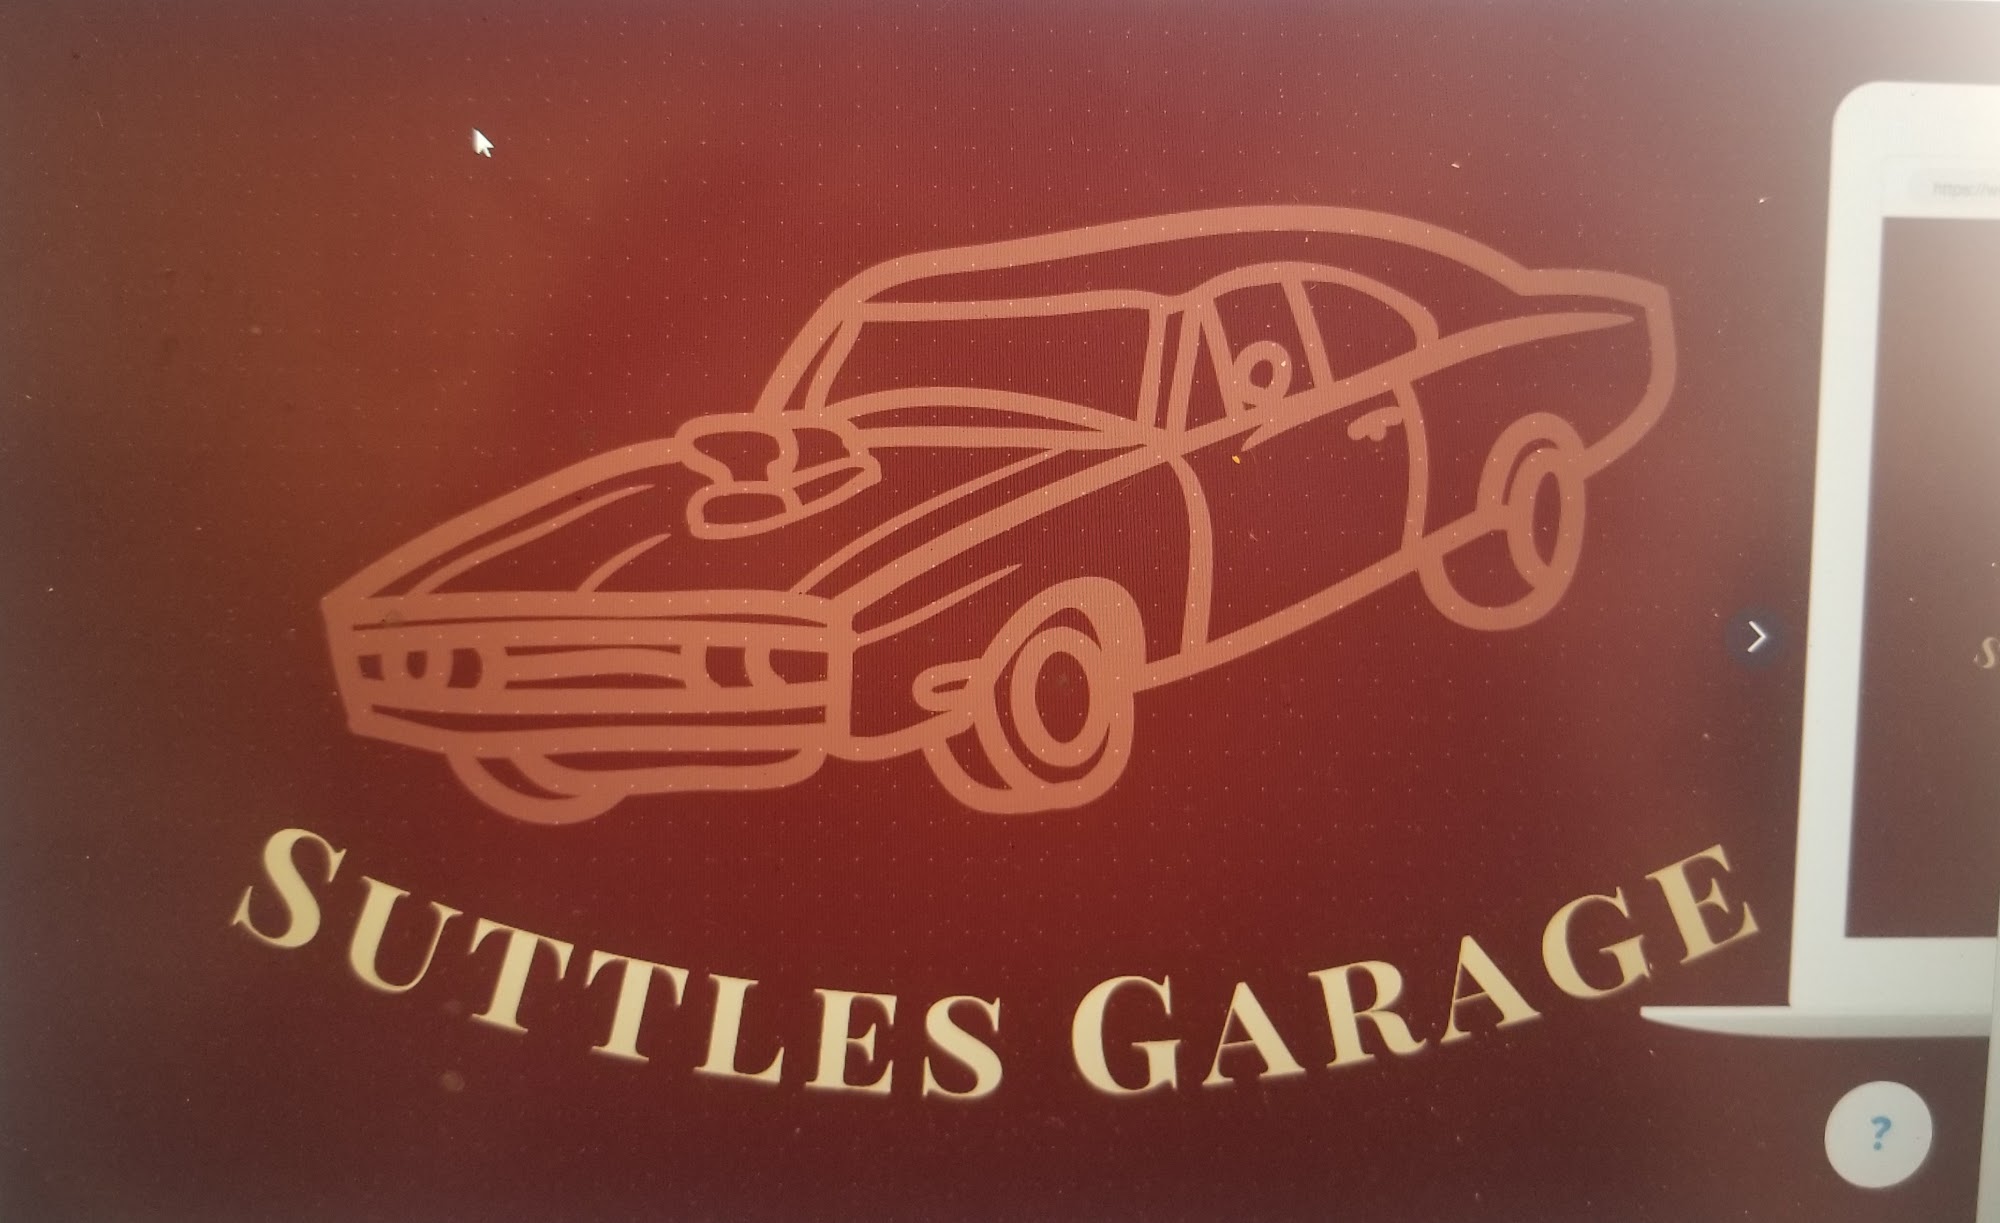 Suttles Garage